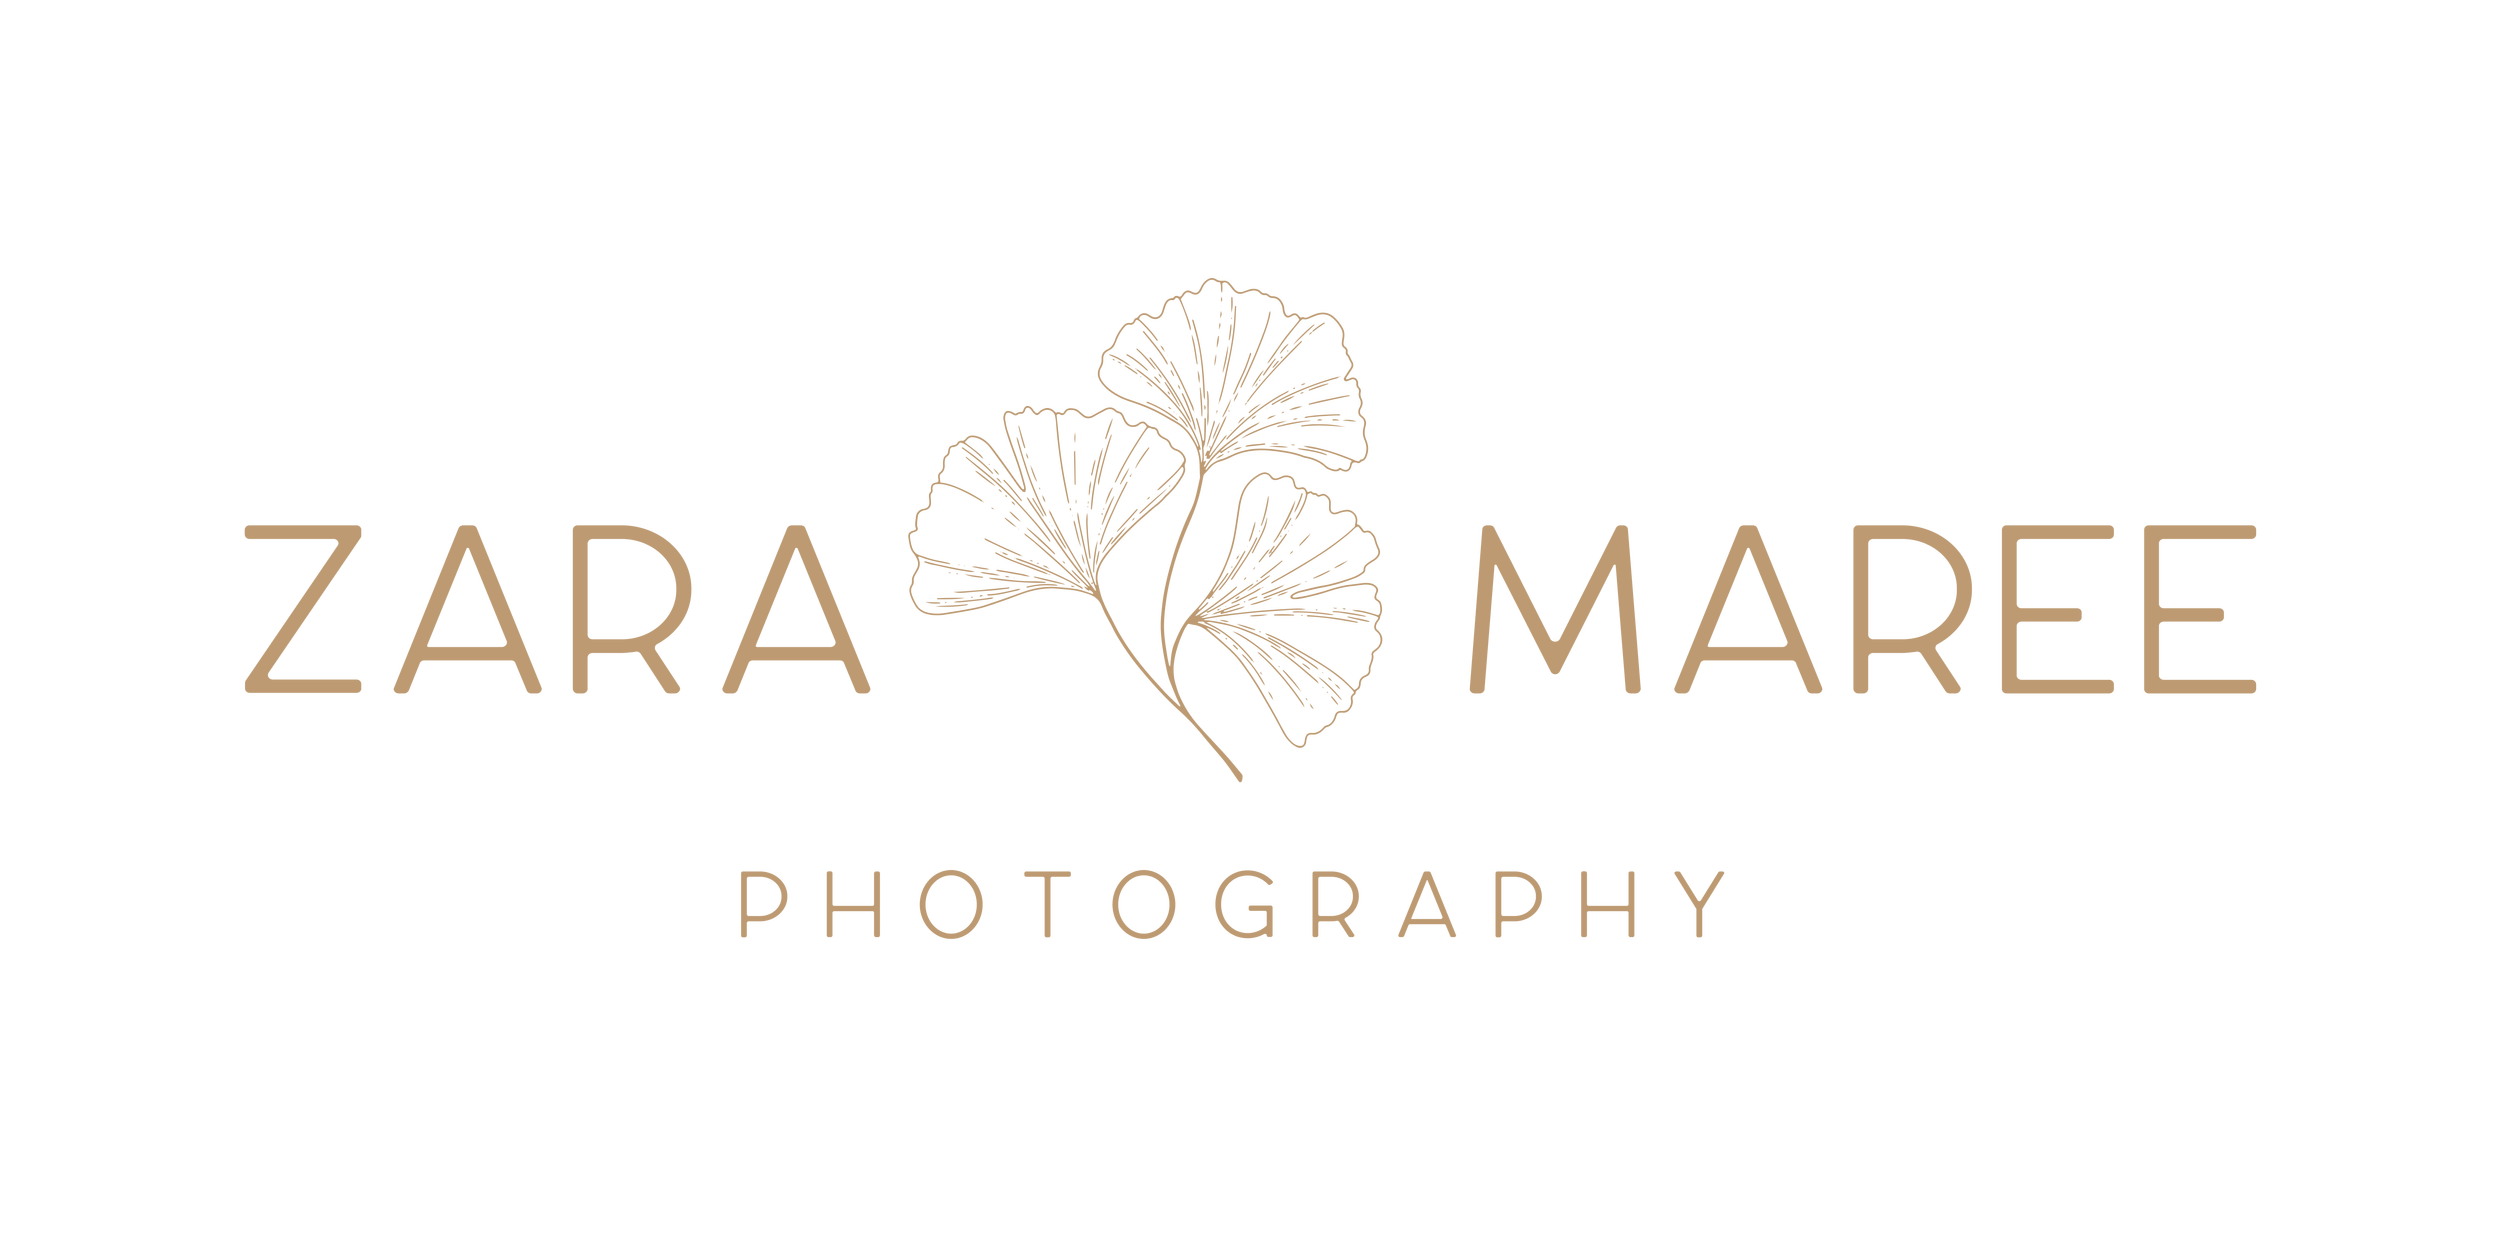 Zara Maree Photography